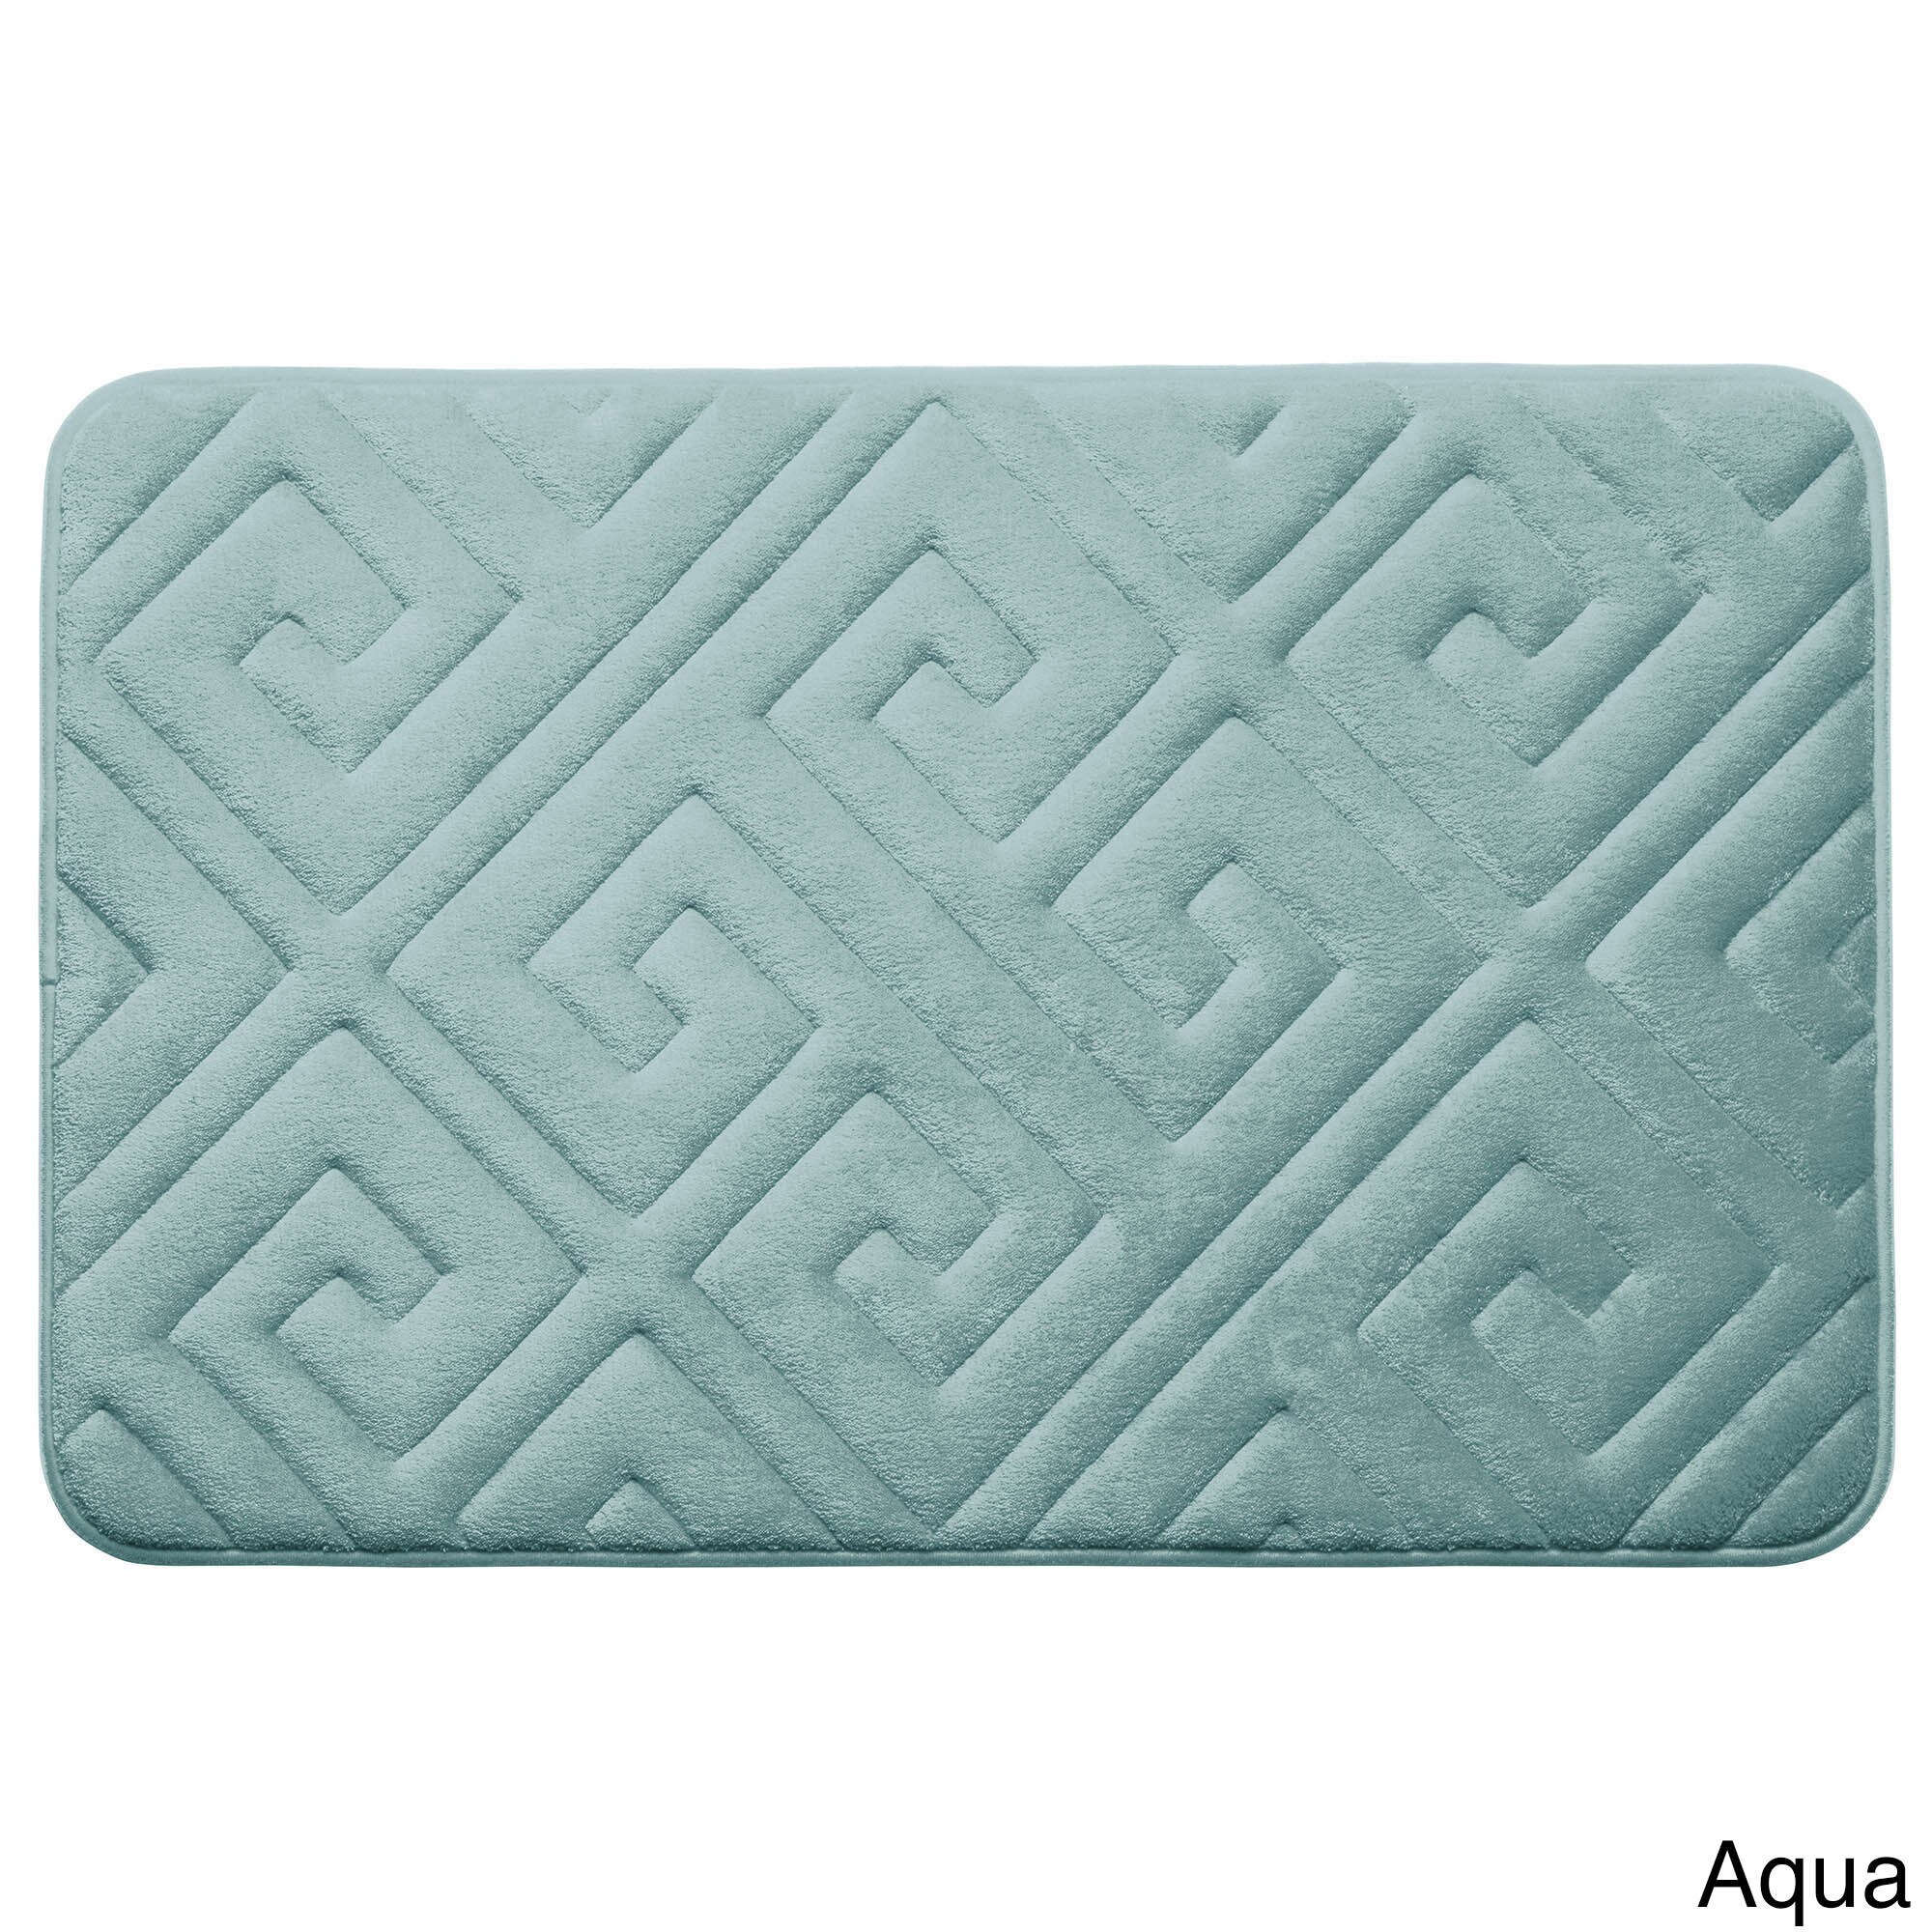 Super Soft BIG 20" X 32Inch Bathroom Memory Foam Bath Mat Solid All colors 